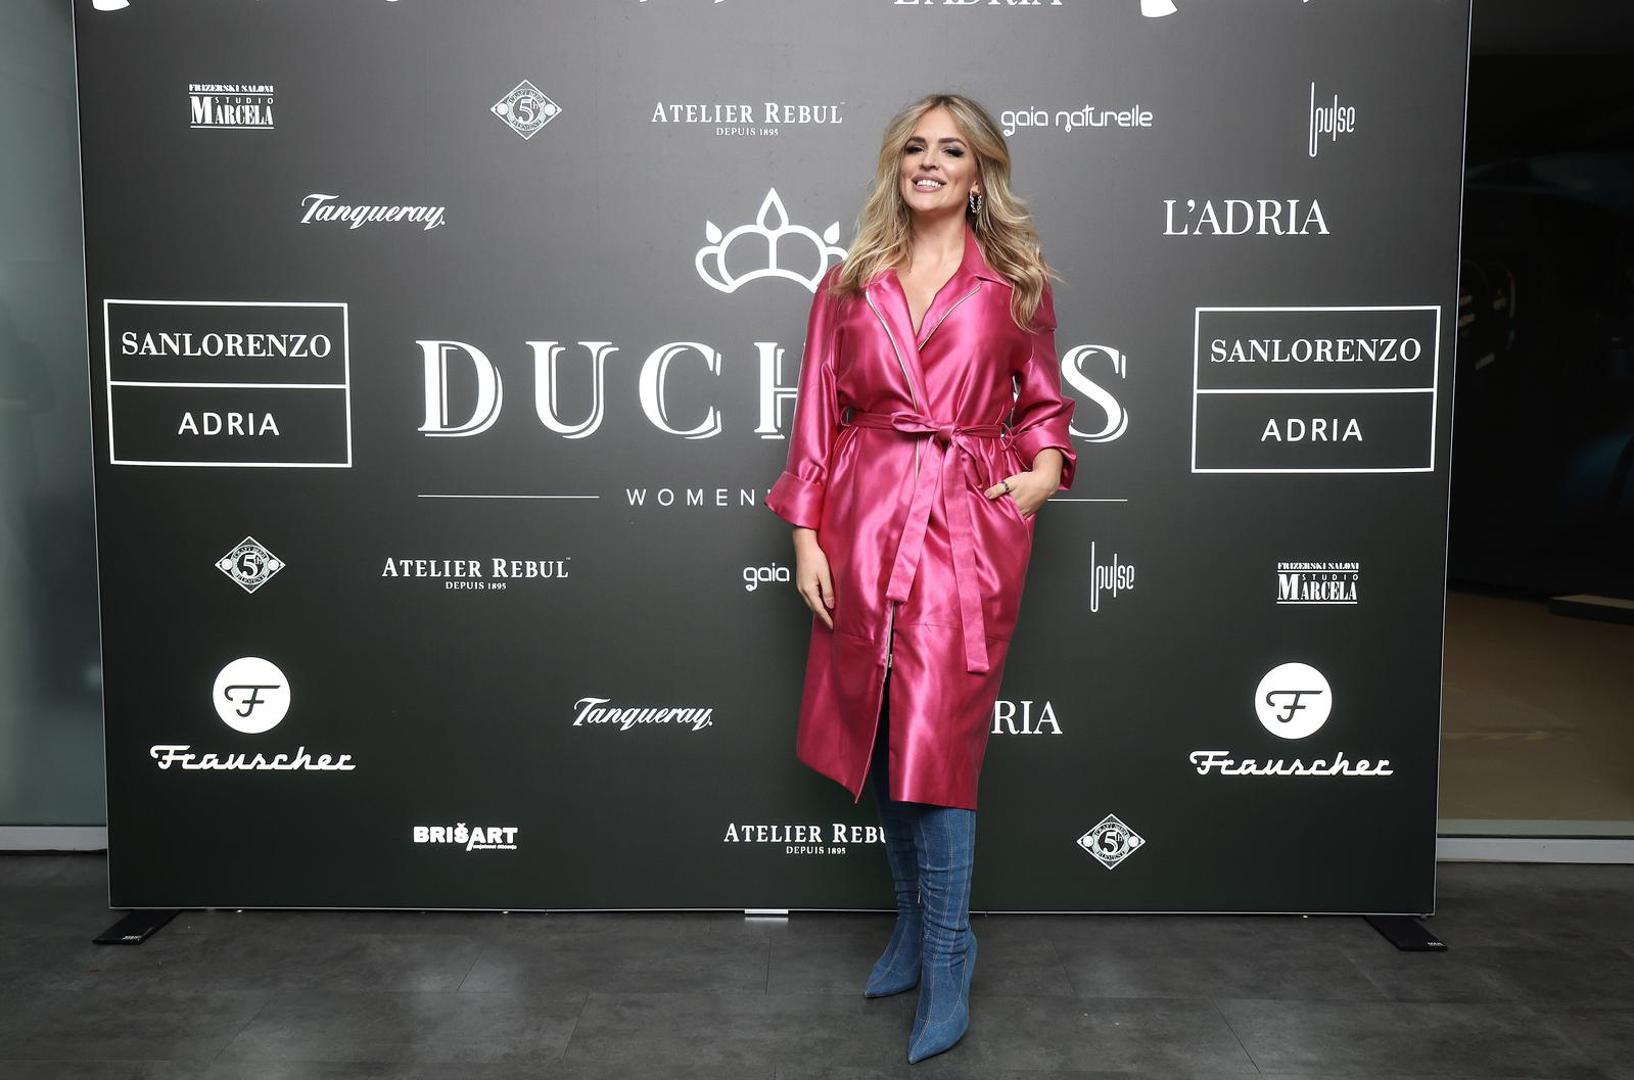 Uz to brend Duchess podržale su i nekadašnja Miss Hrvatske Ivana Delač, pjevačica grupe Colonia Ivana Lovrić koja nije mogla proći nezapaženo zbog svog kričavog ružičastog kaputa.